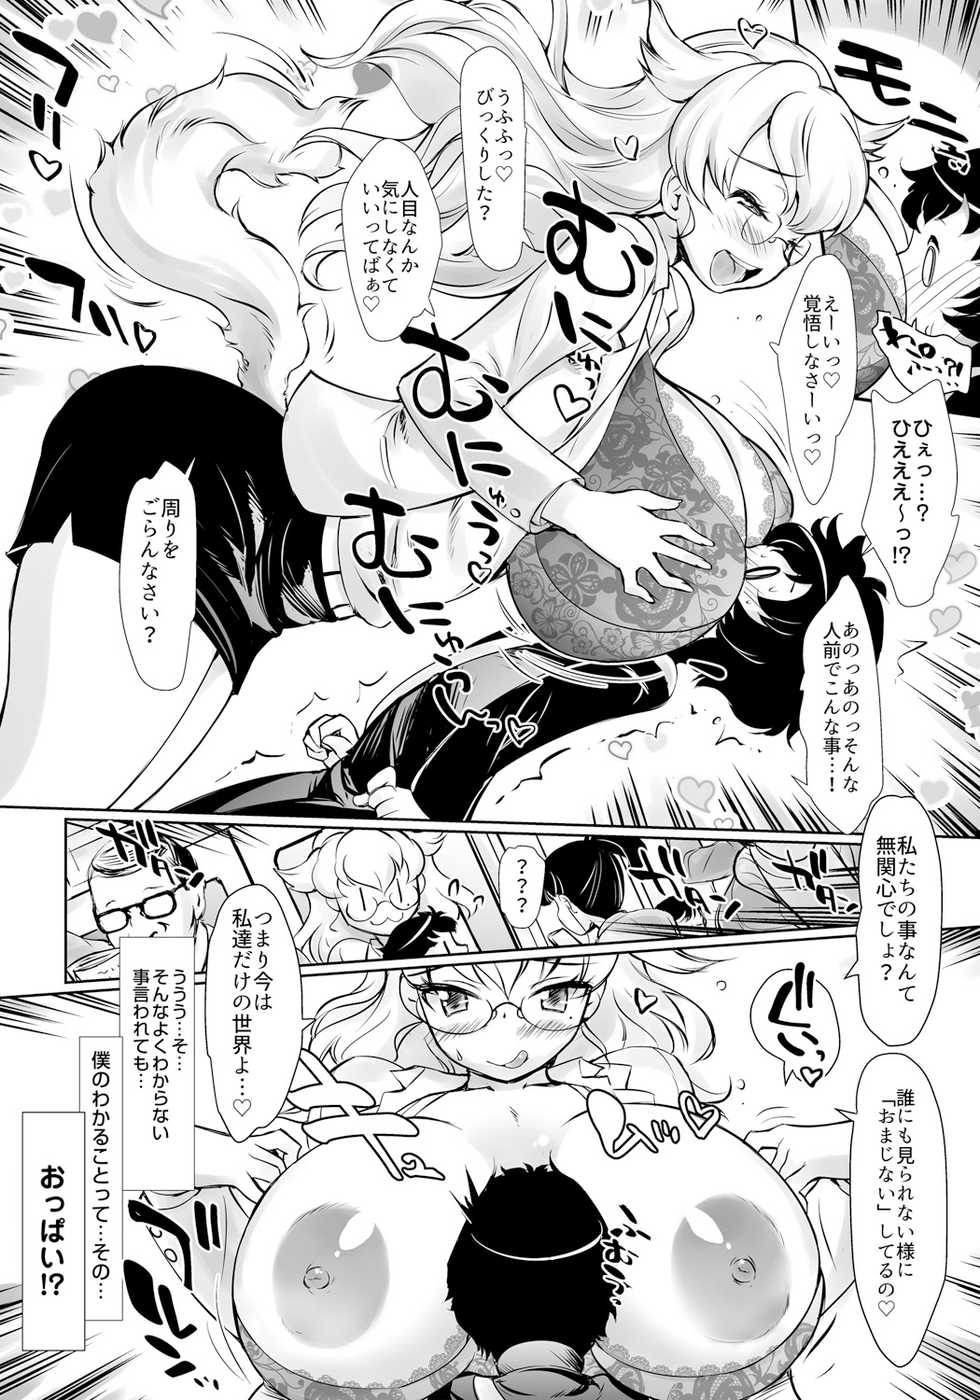 [rt.] Dokidoki Youko Sensei - Manin Densha de Gyaku Rape!? Boku to Youko no Deai Banashi - Page 9